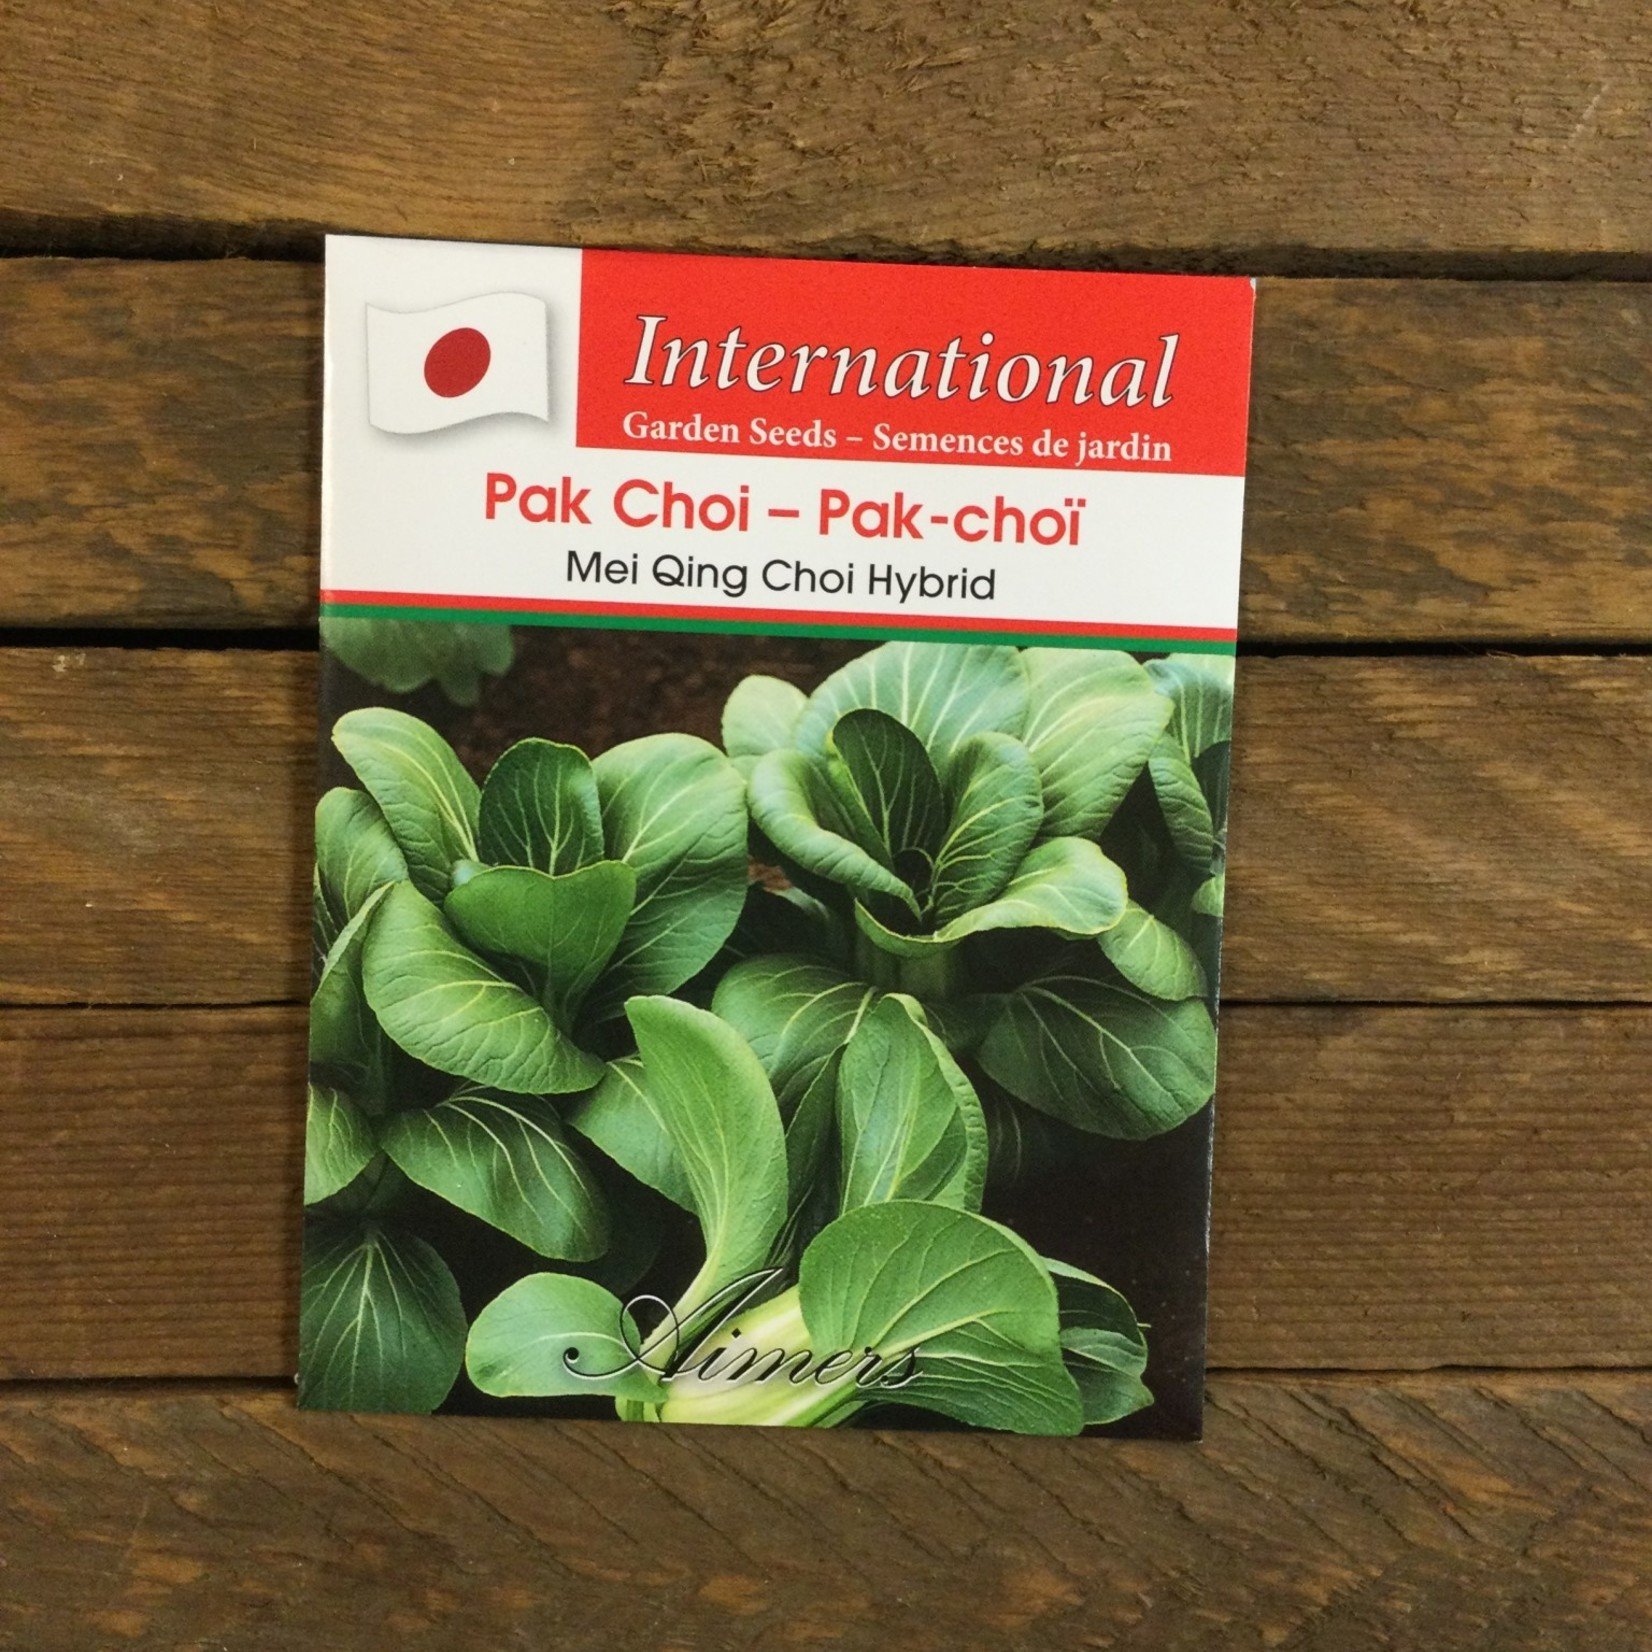 Aimers International Pak Choi 'Mei Qing Choi Hybird' seeds